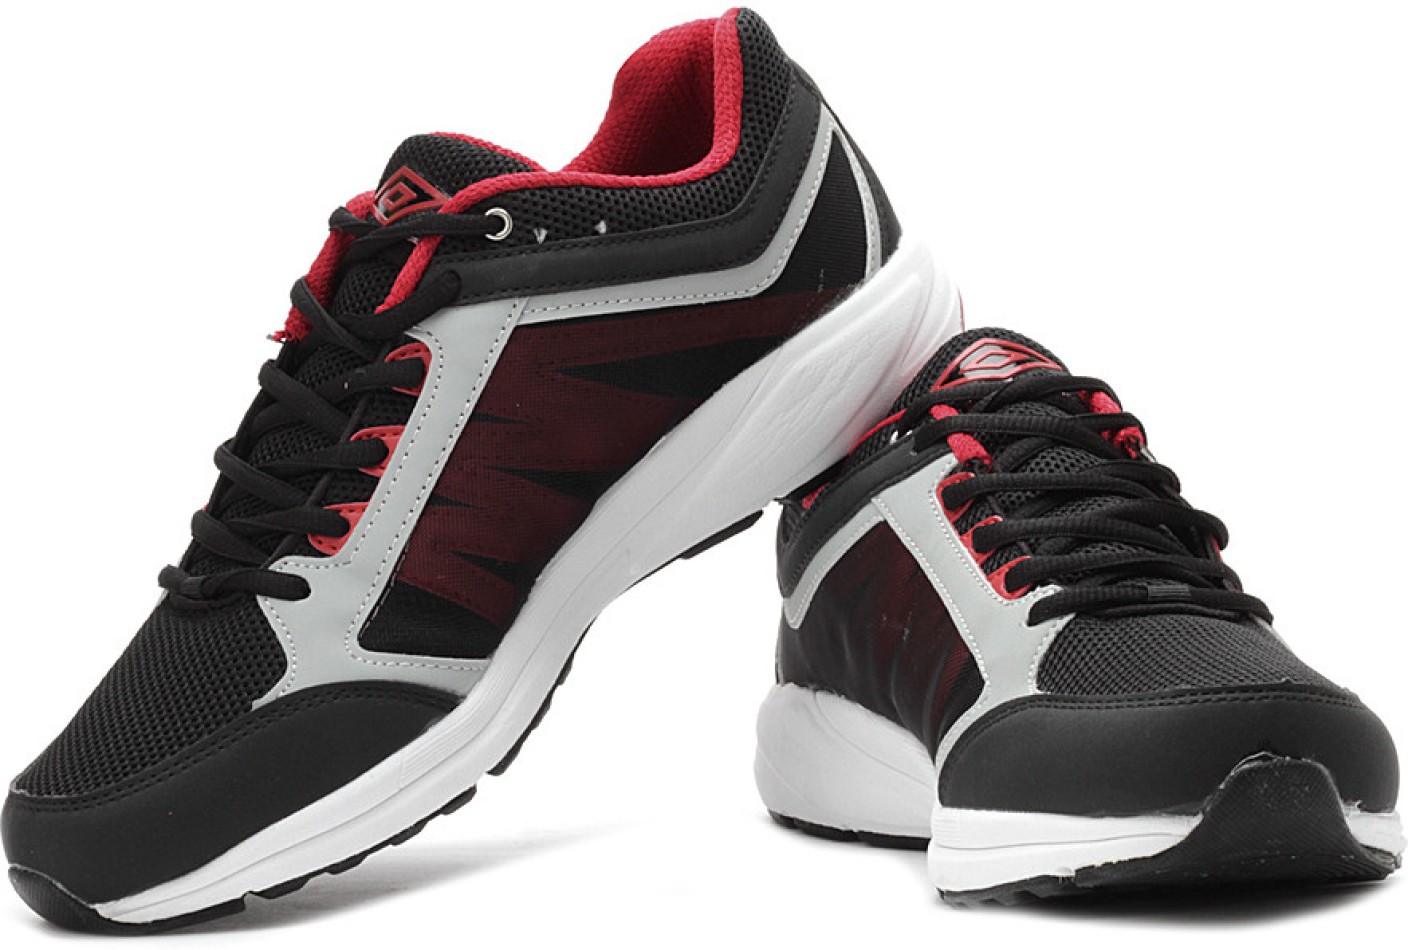 Umbro Torun Running Shoes For Men - Buy Black, Red Color Umbro Torun ...